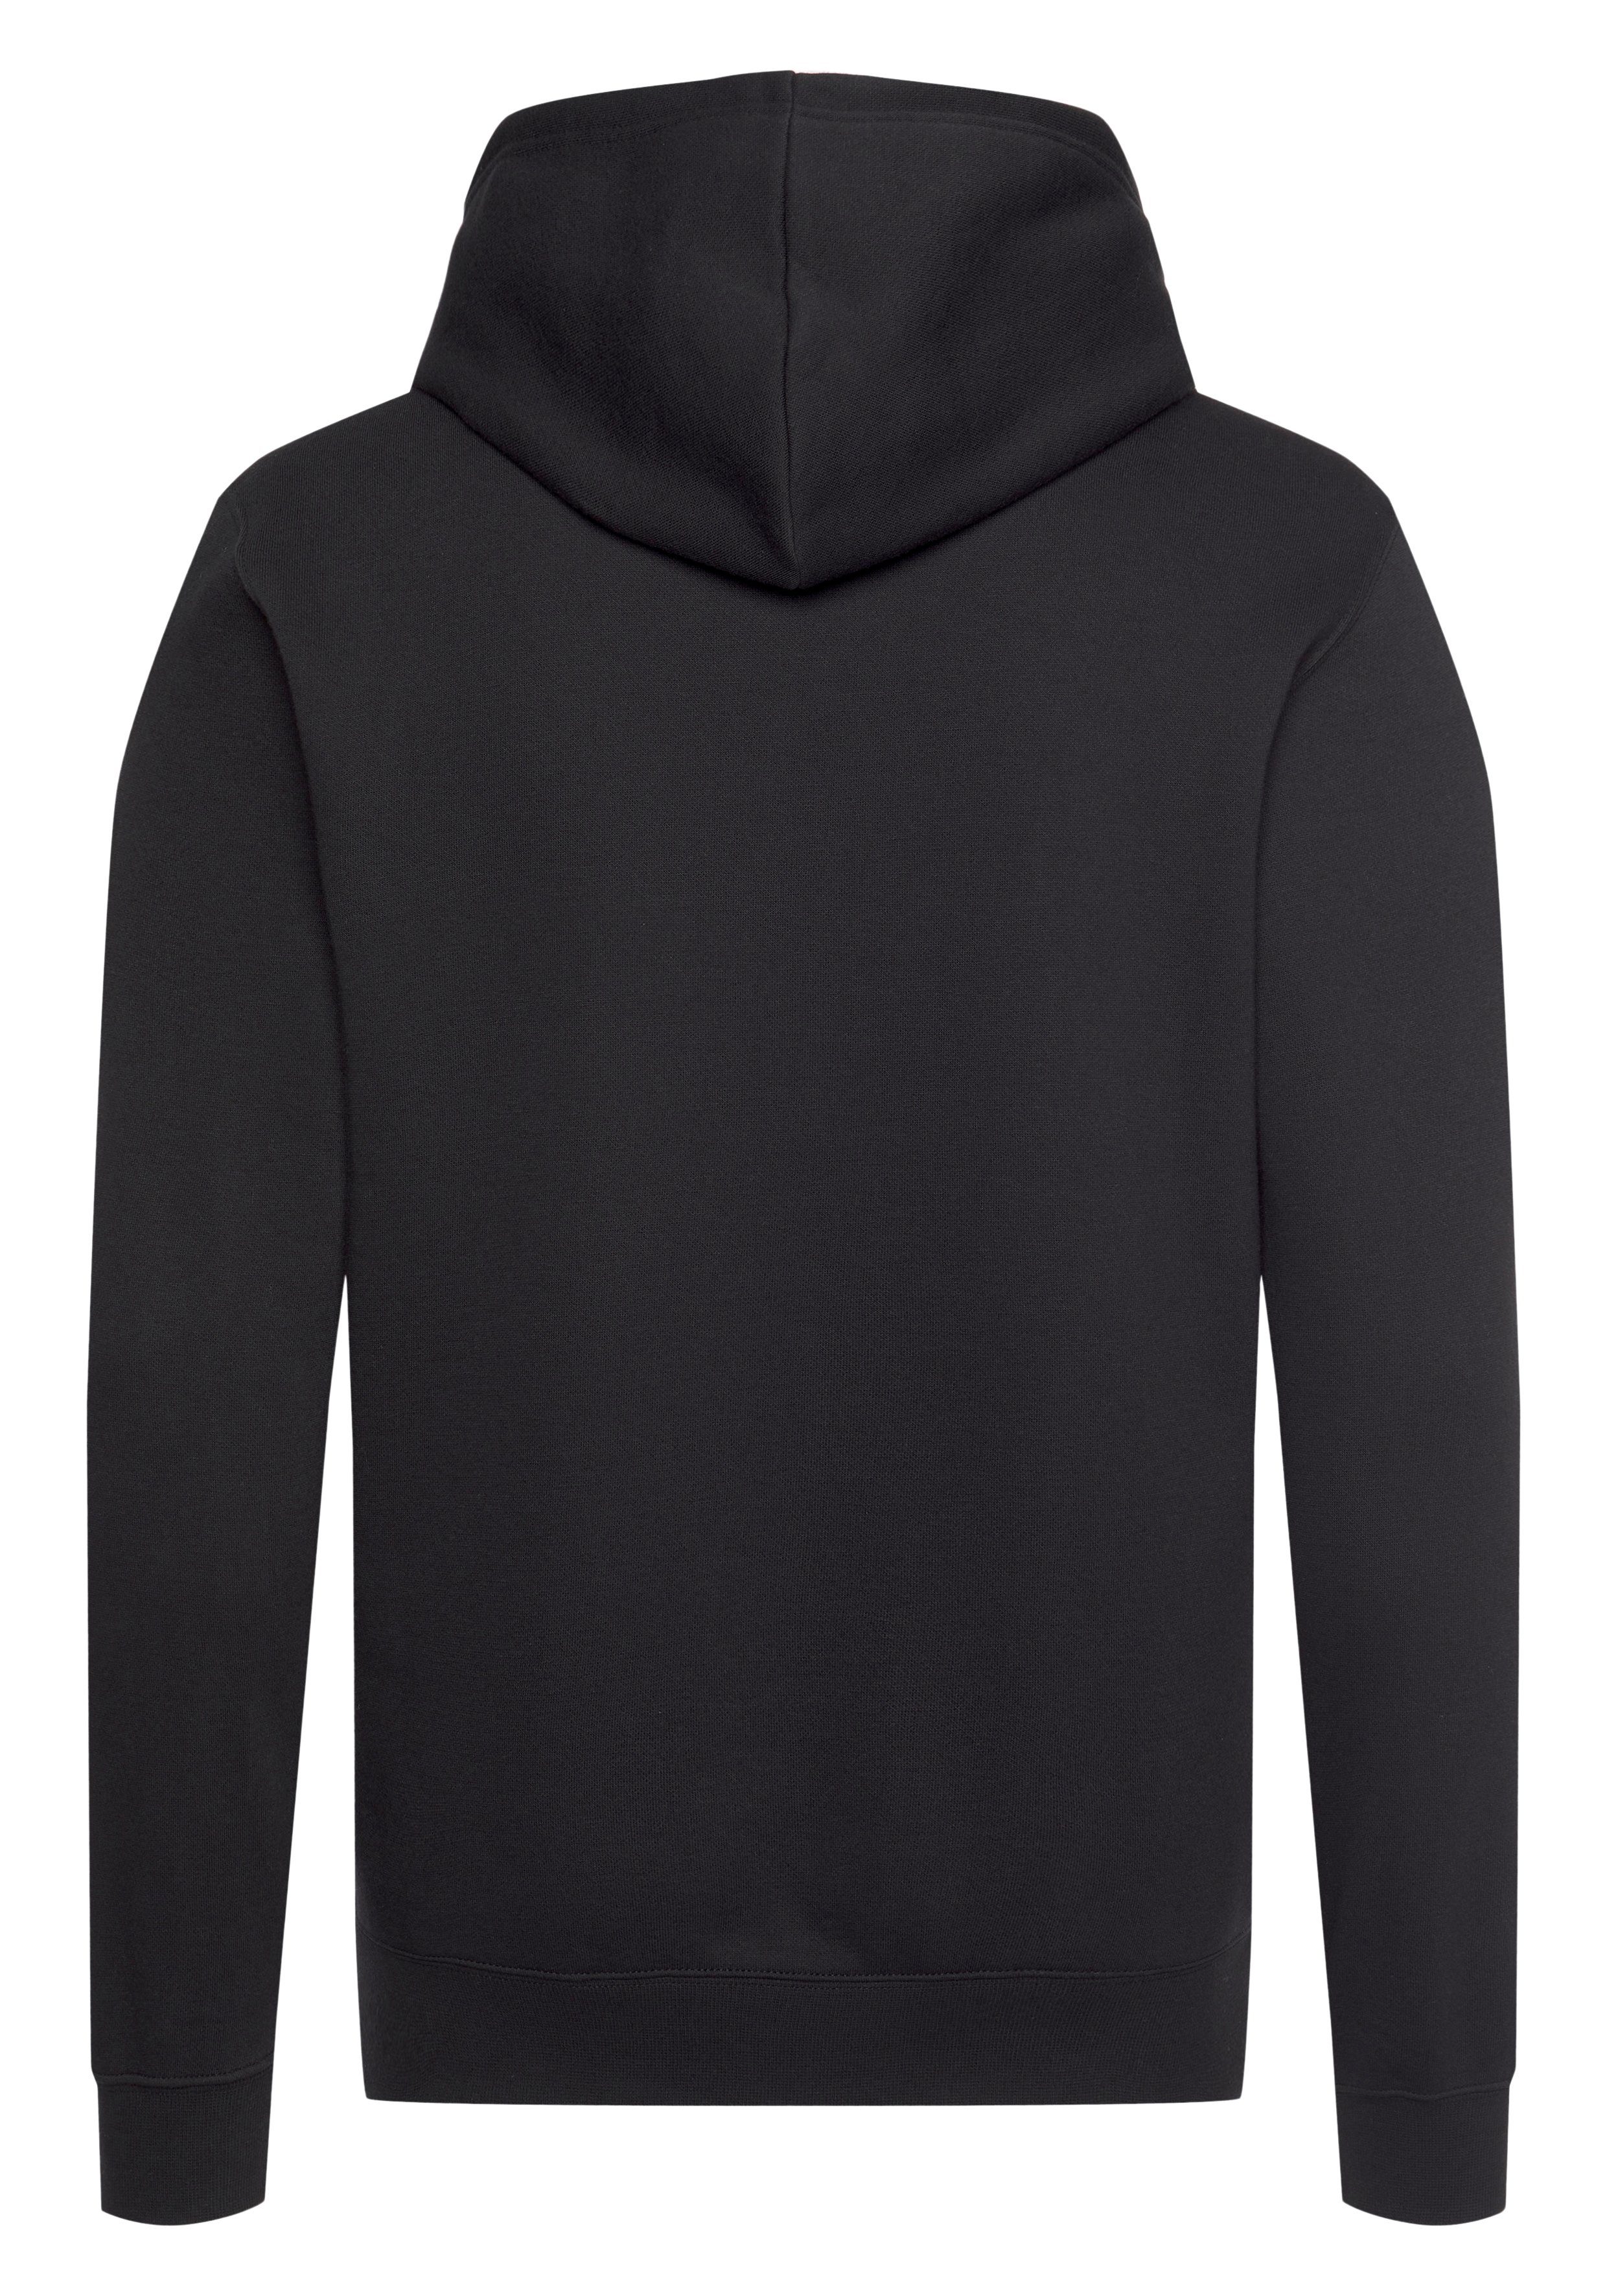 Kapuzensweatshirt Sweatshirt Champion Hooded schwarz